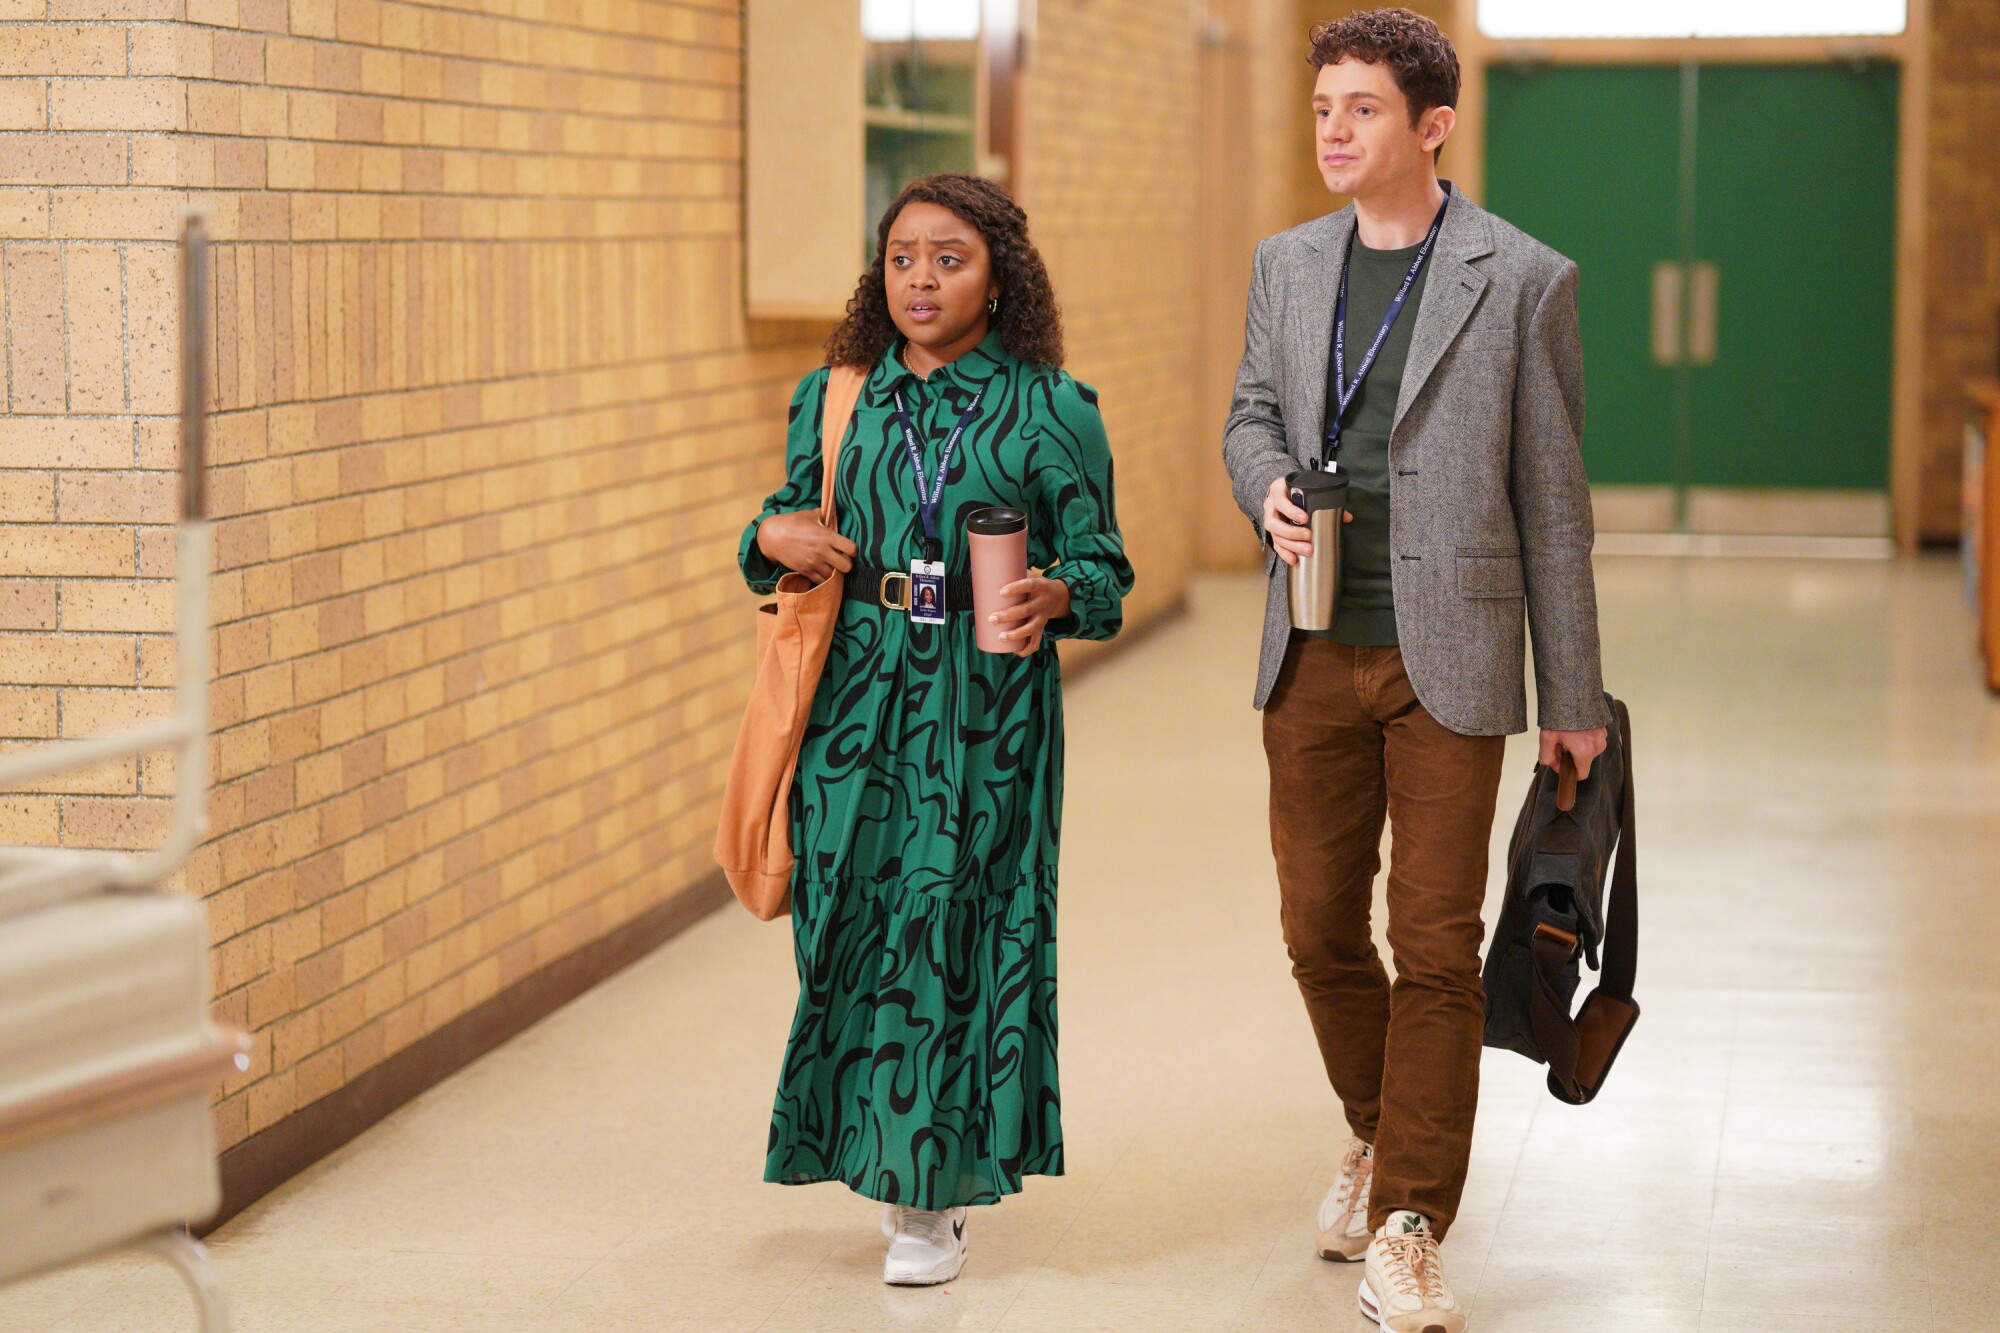 Two people walk down a school hallway in a scene from 